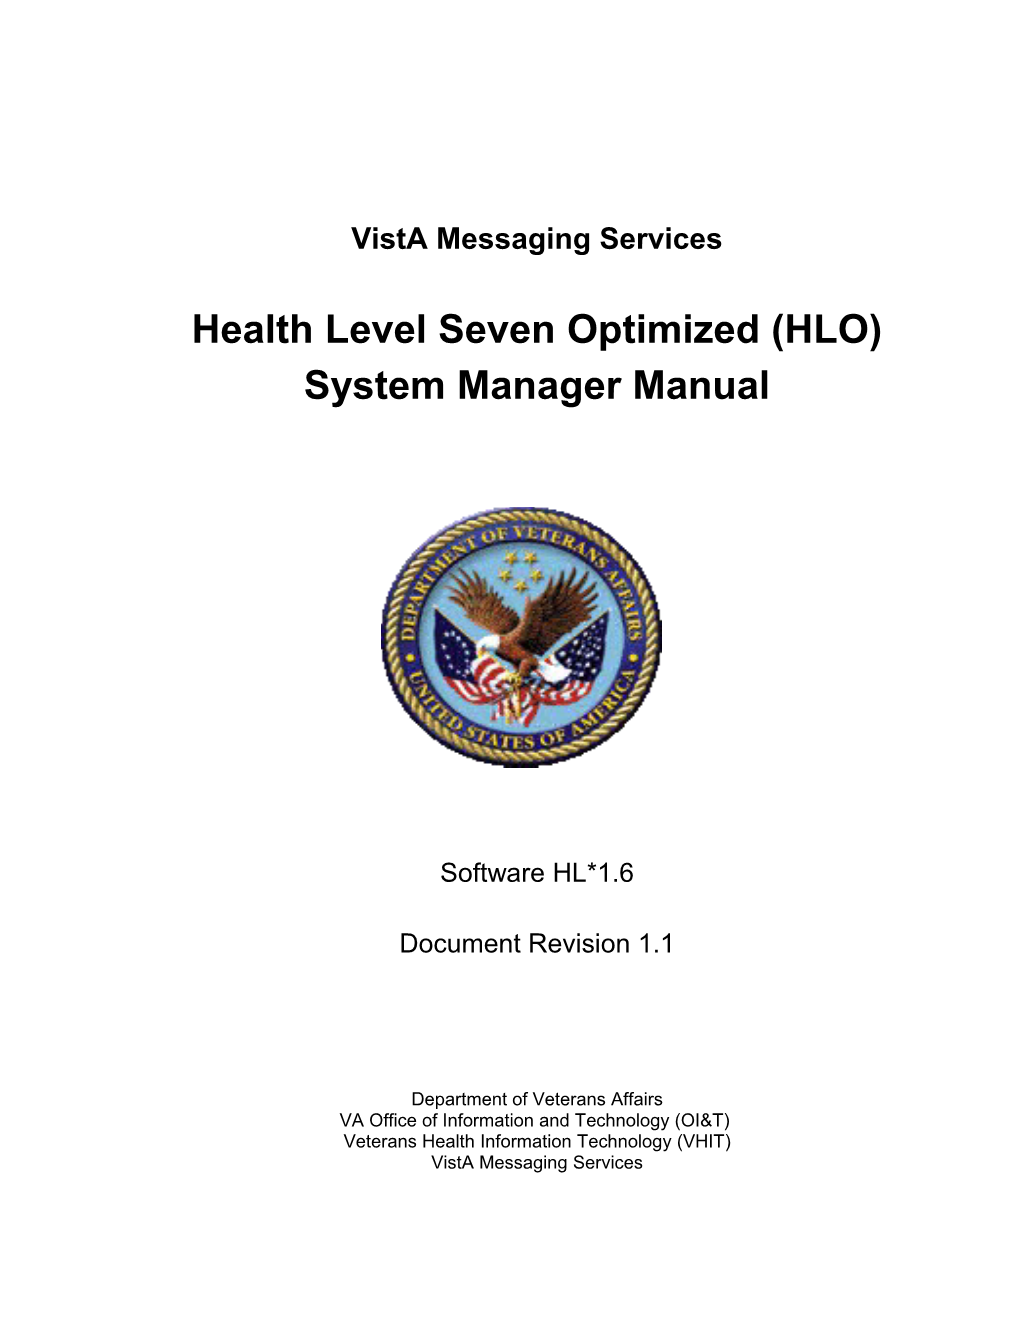 HL*1.6*126 HLO Technical Manual Document Revision V. 1.1